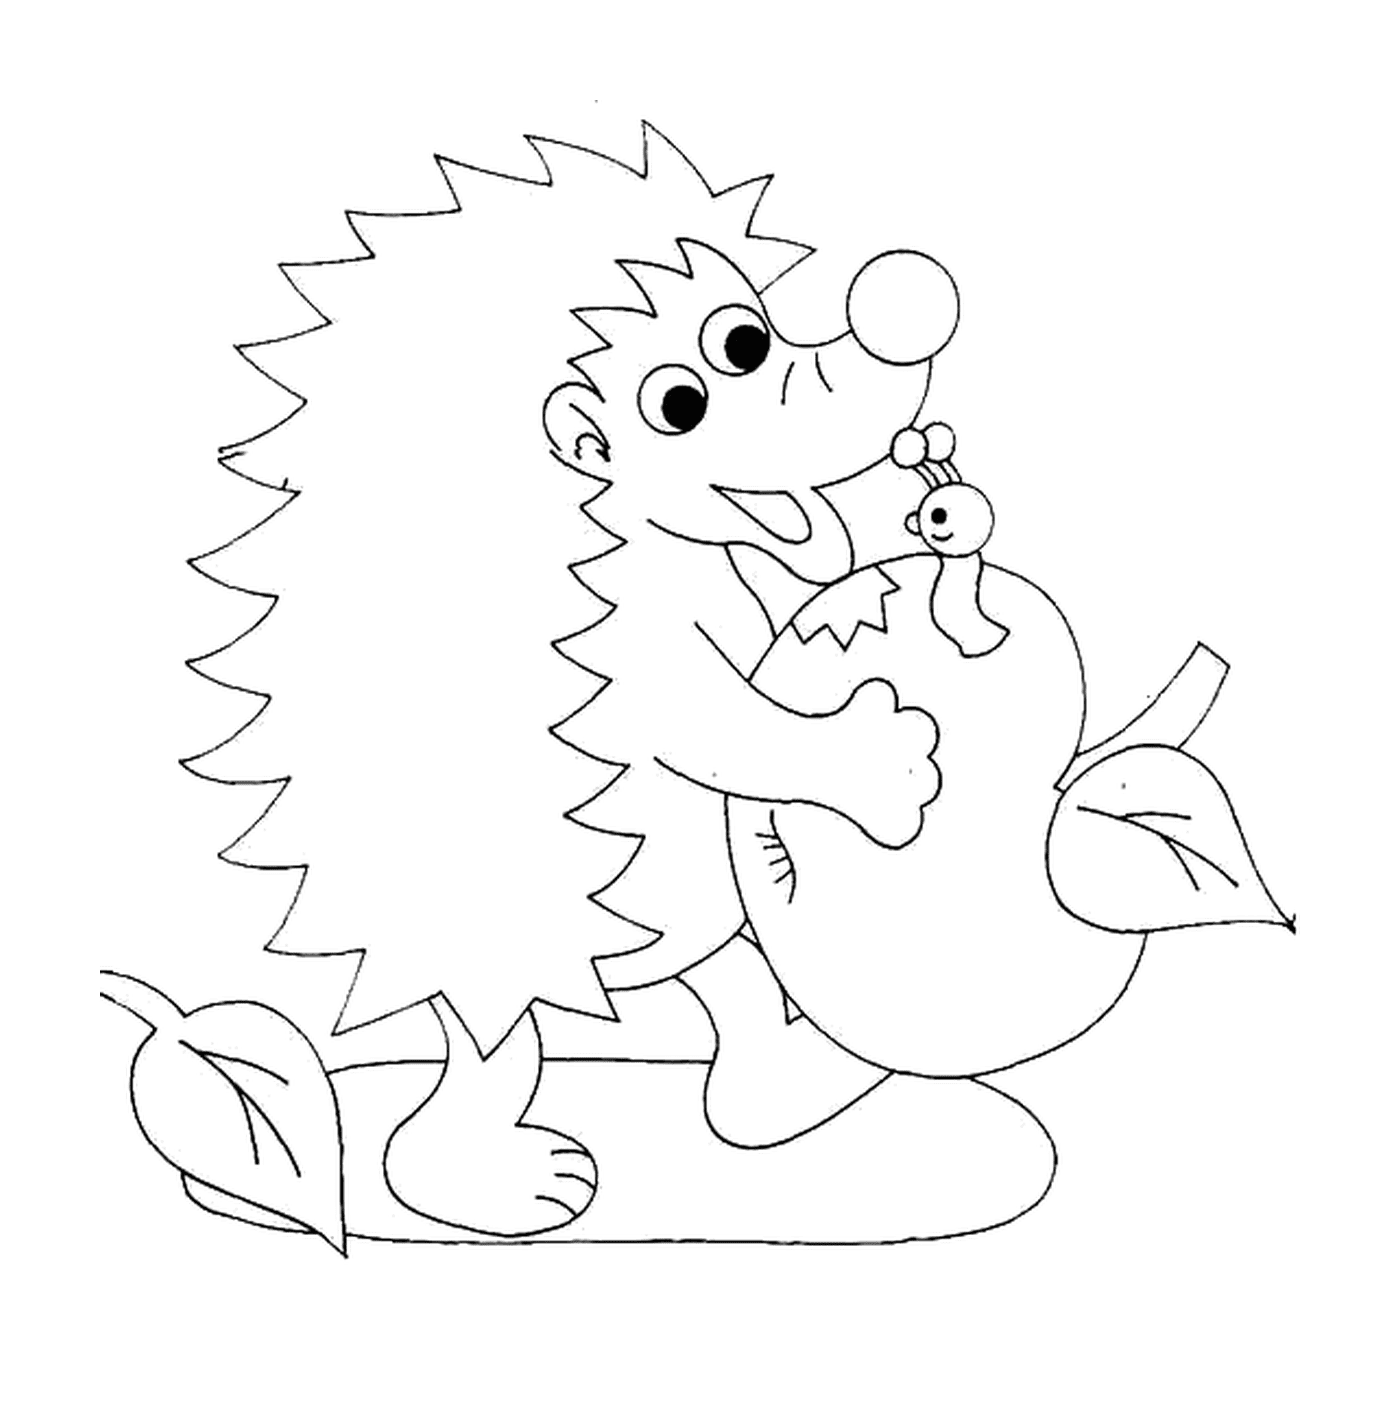  Hedgehog carregando uma maçã 